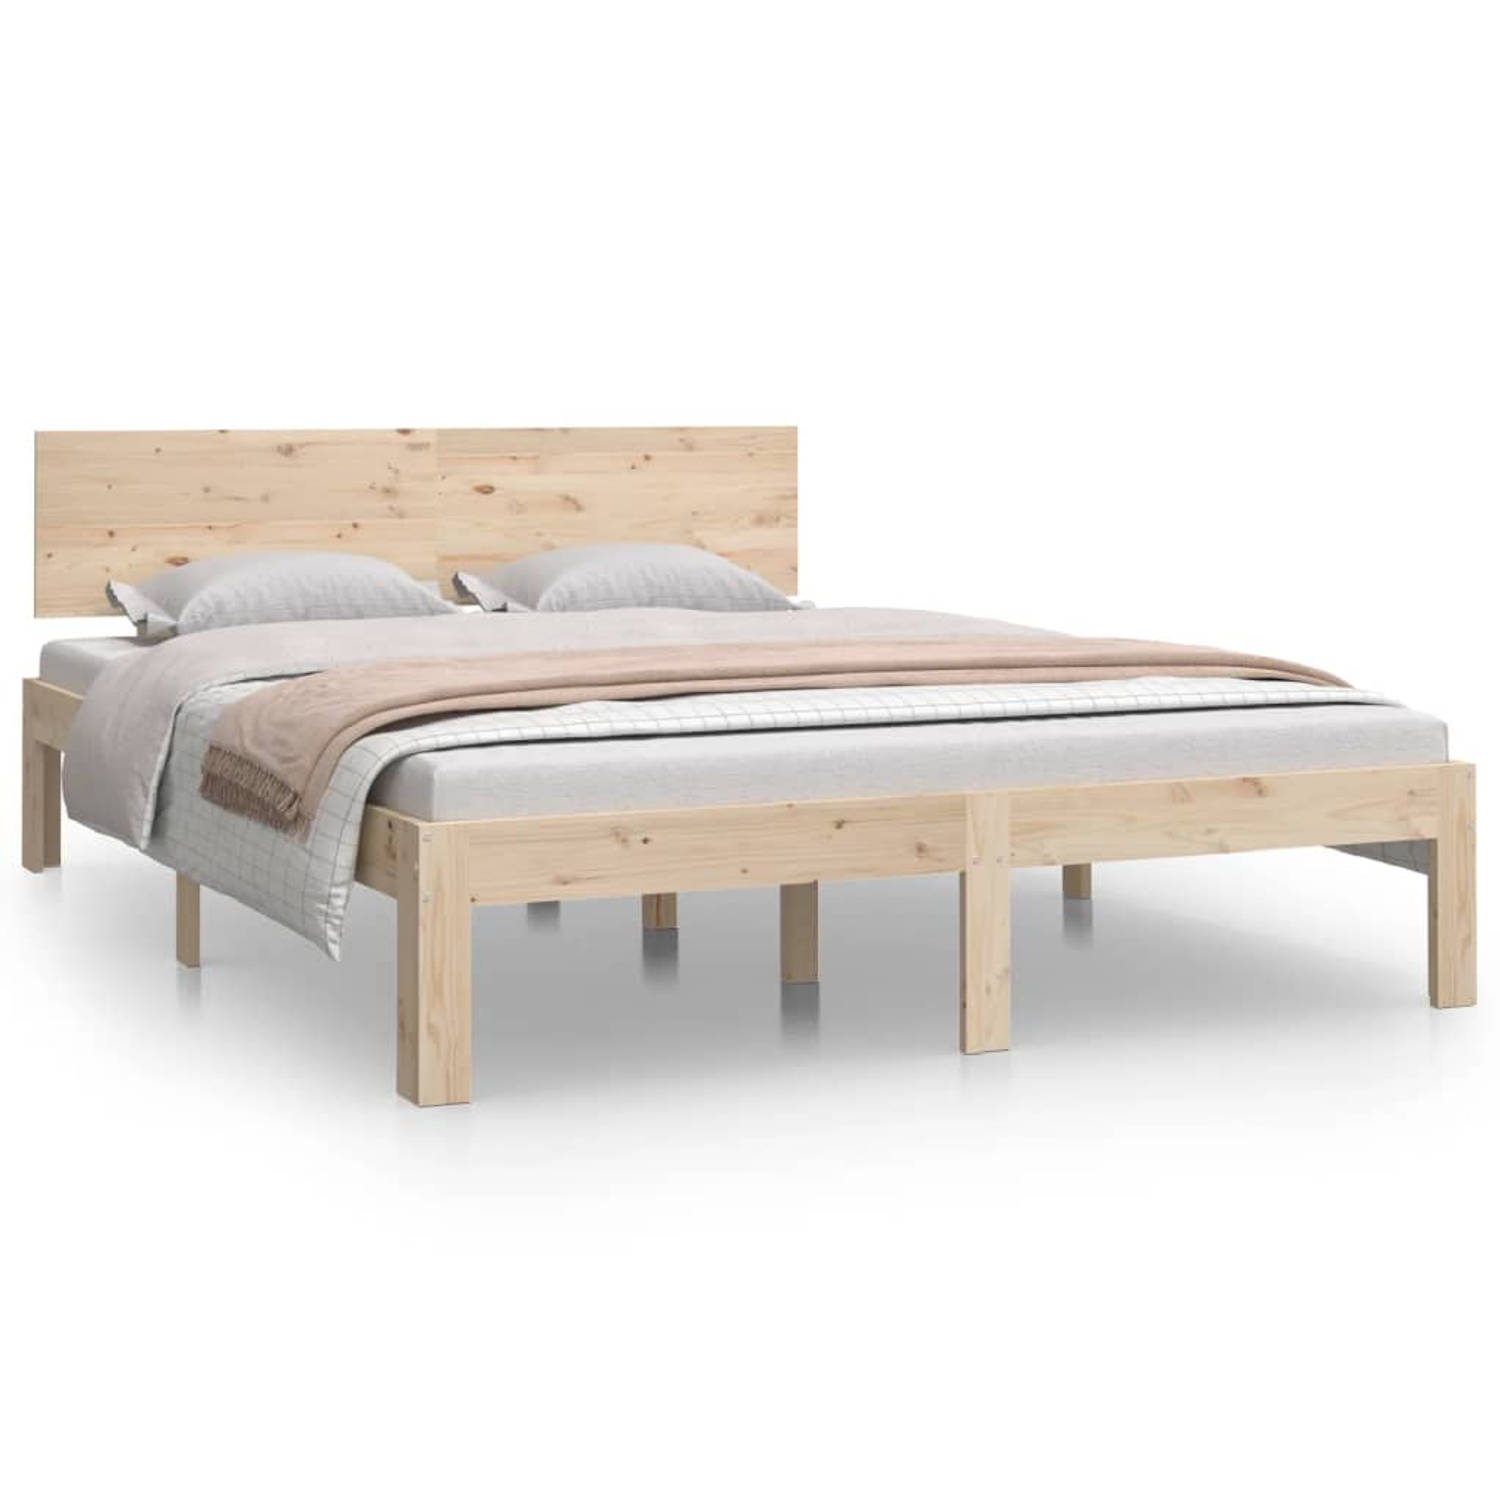 The Living Store Bedframe massief hout 135x190 cm 4FT6 Double - Bedframe - Bedframes - Bed - Bedbodem - Ledikant - Bed Frame - Massief Houten Bedframe - Slaapmeubel - Bedden - Bedb